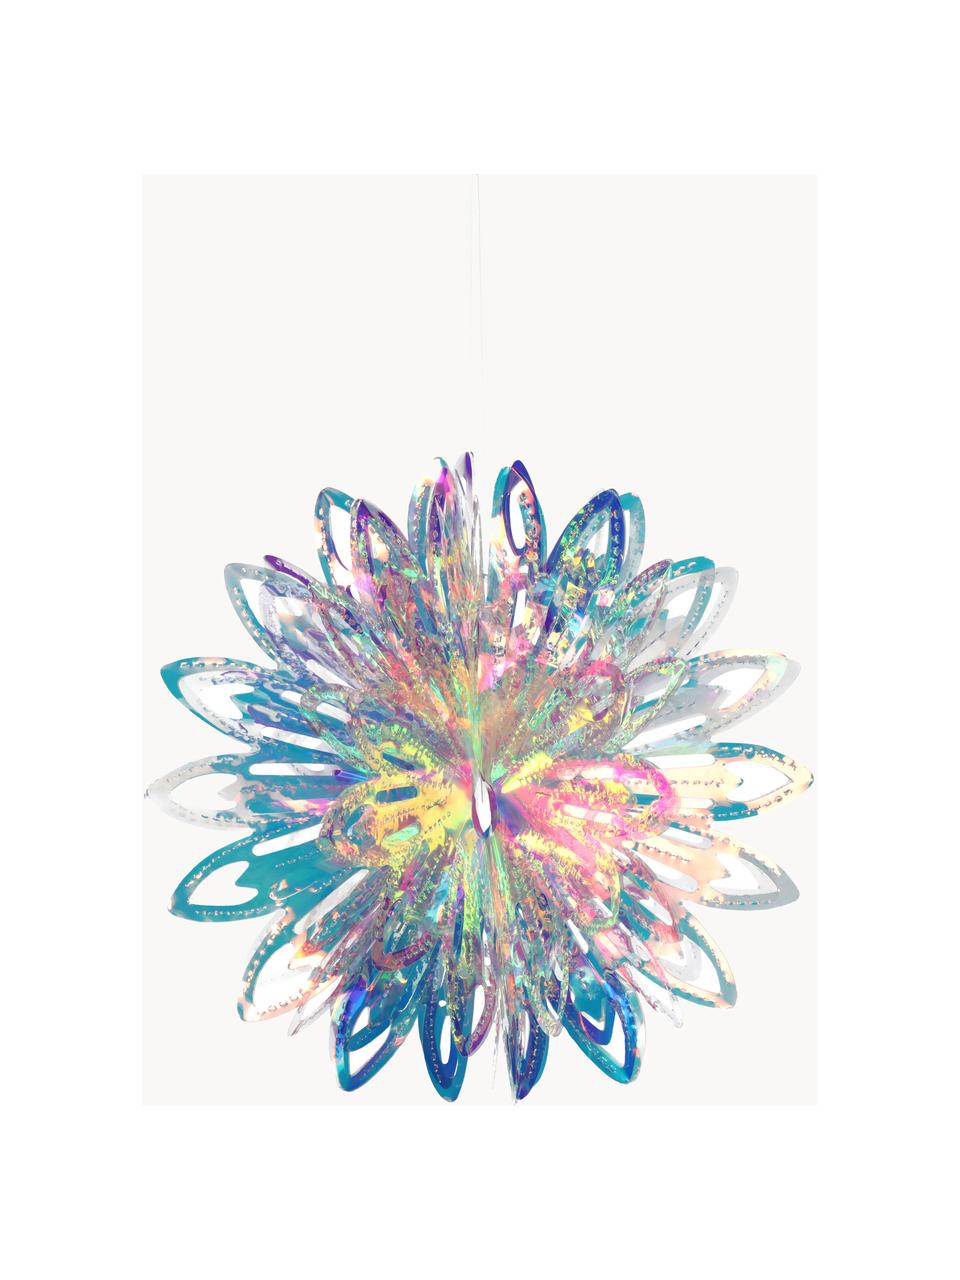 Bombka choinkowa Iridescent, Tworzywo sztuczne, Transparentny, opalizujący, Ø 23 cm